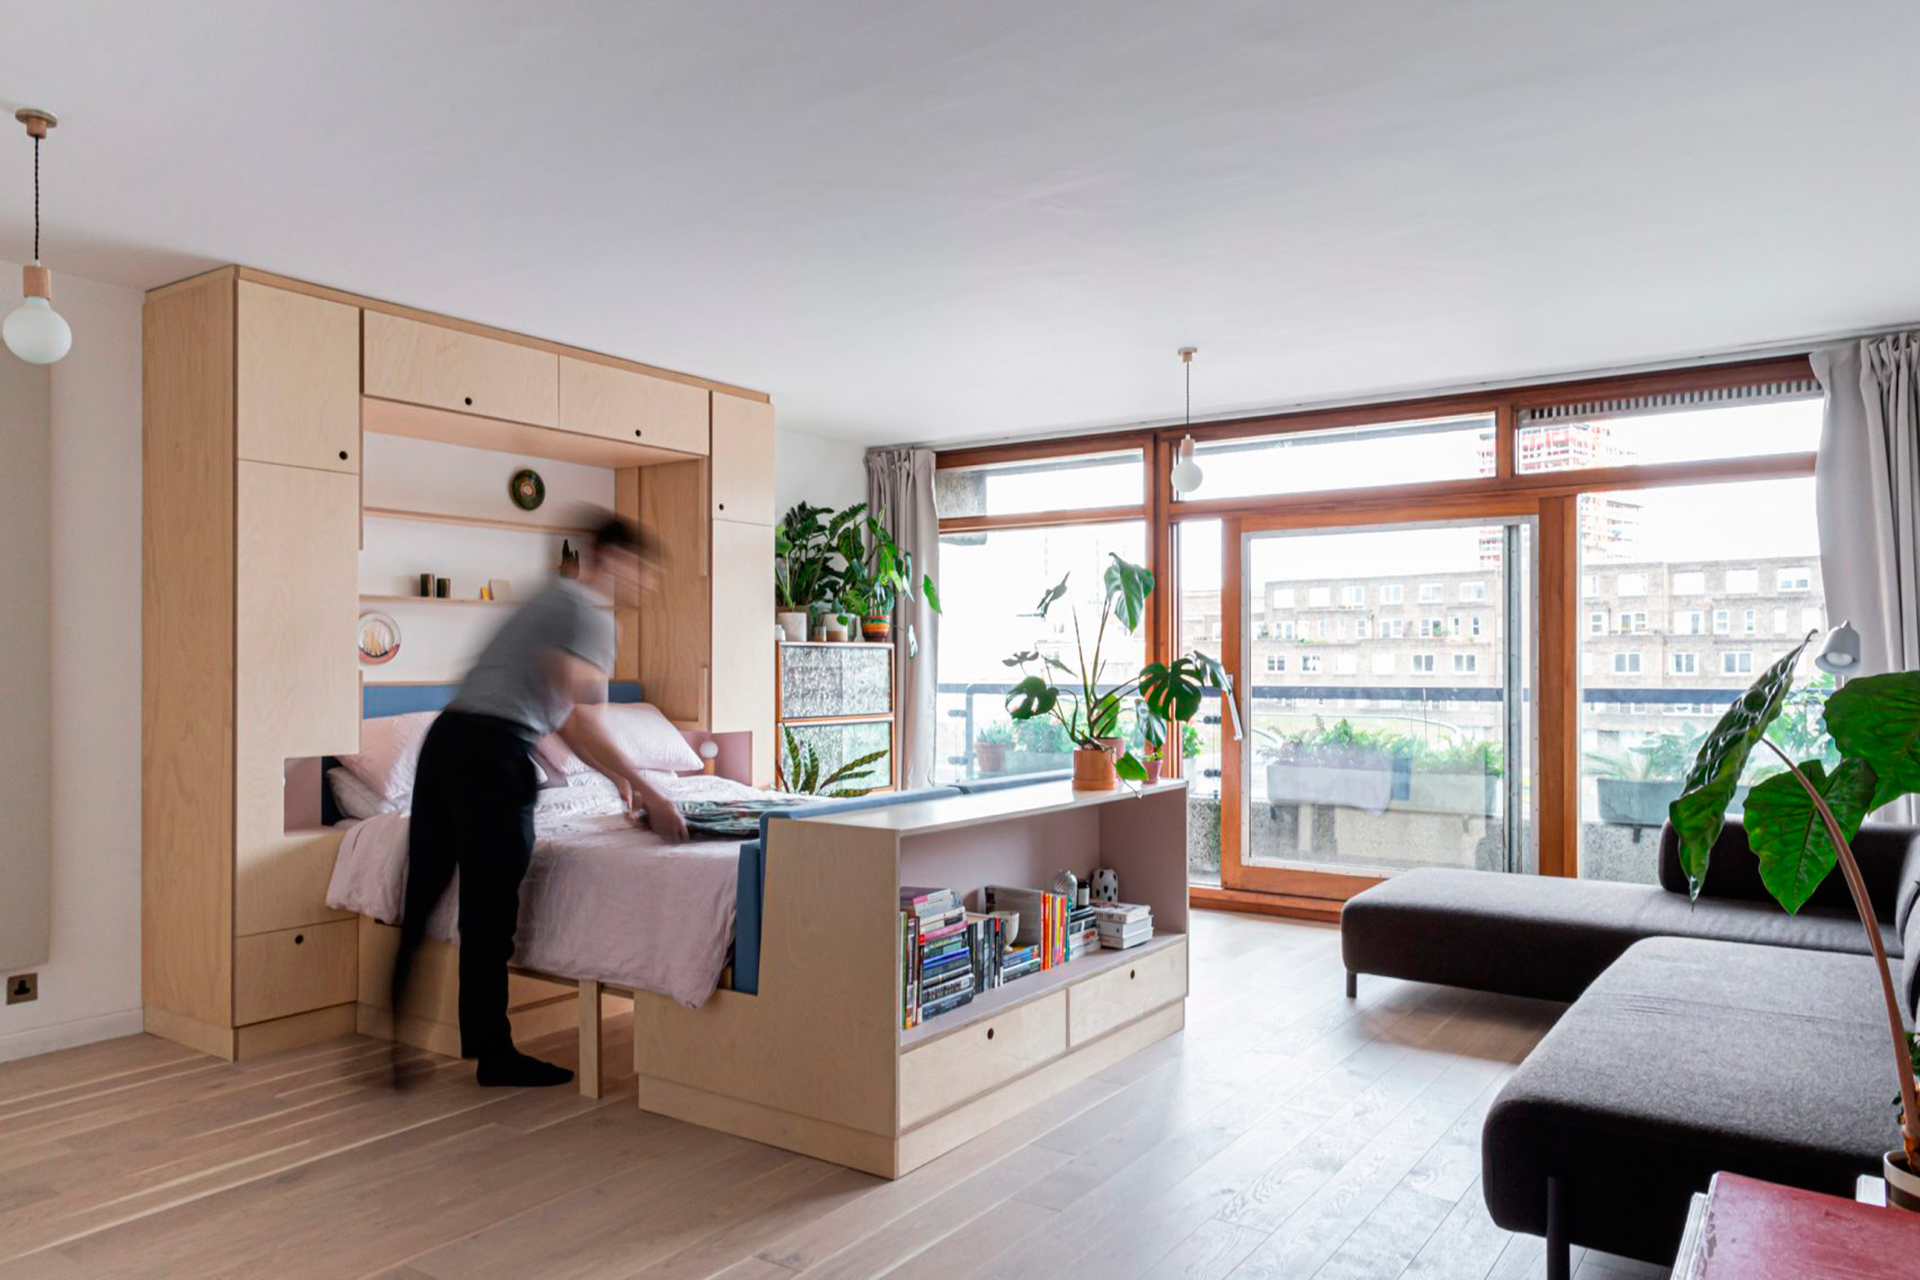 Дизайн однокомнатной квартиры 2020-2021: идеи интерьеров для 1-комнатной квартиры